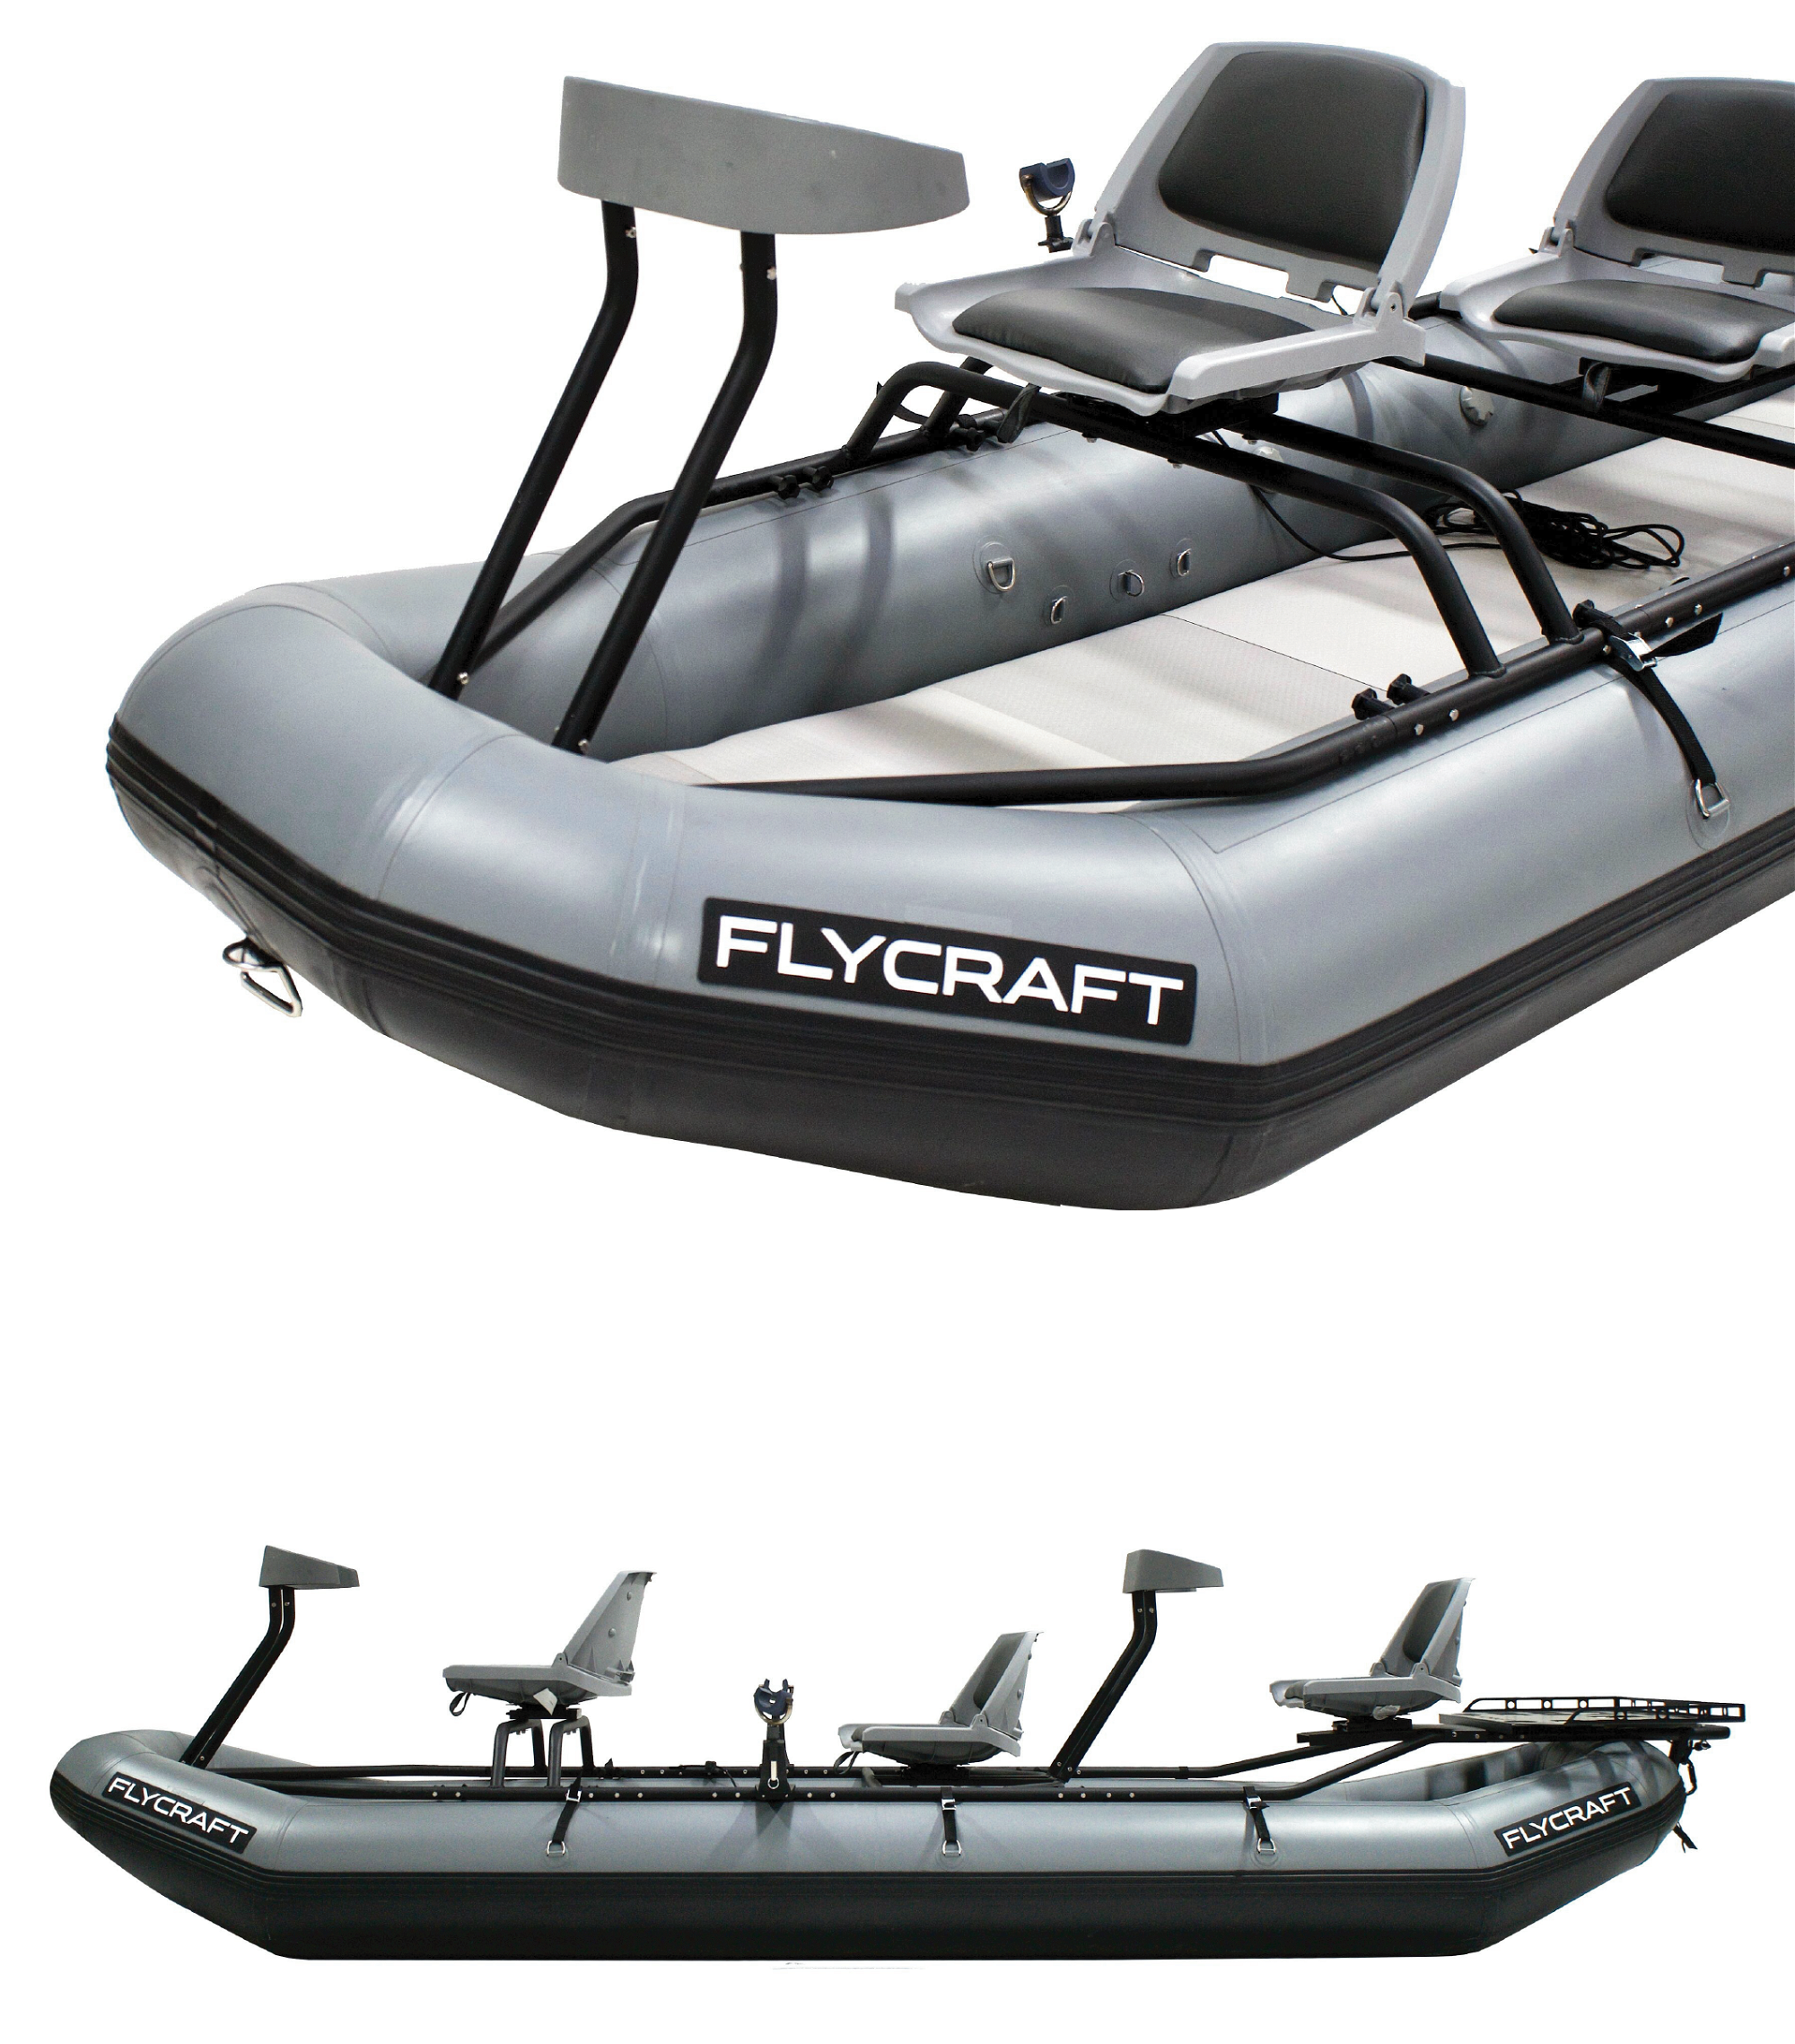 Flycraft Stealth Inflatable Fishing Boat Off 68 Www Sales Sp Gov Br